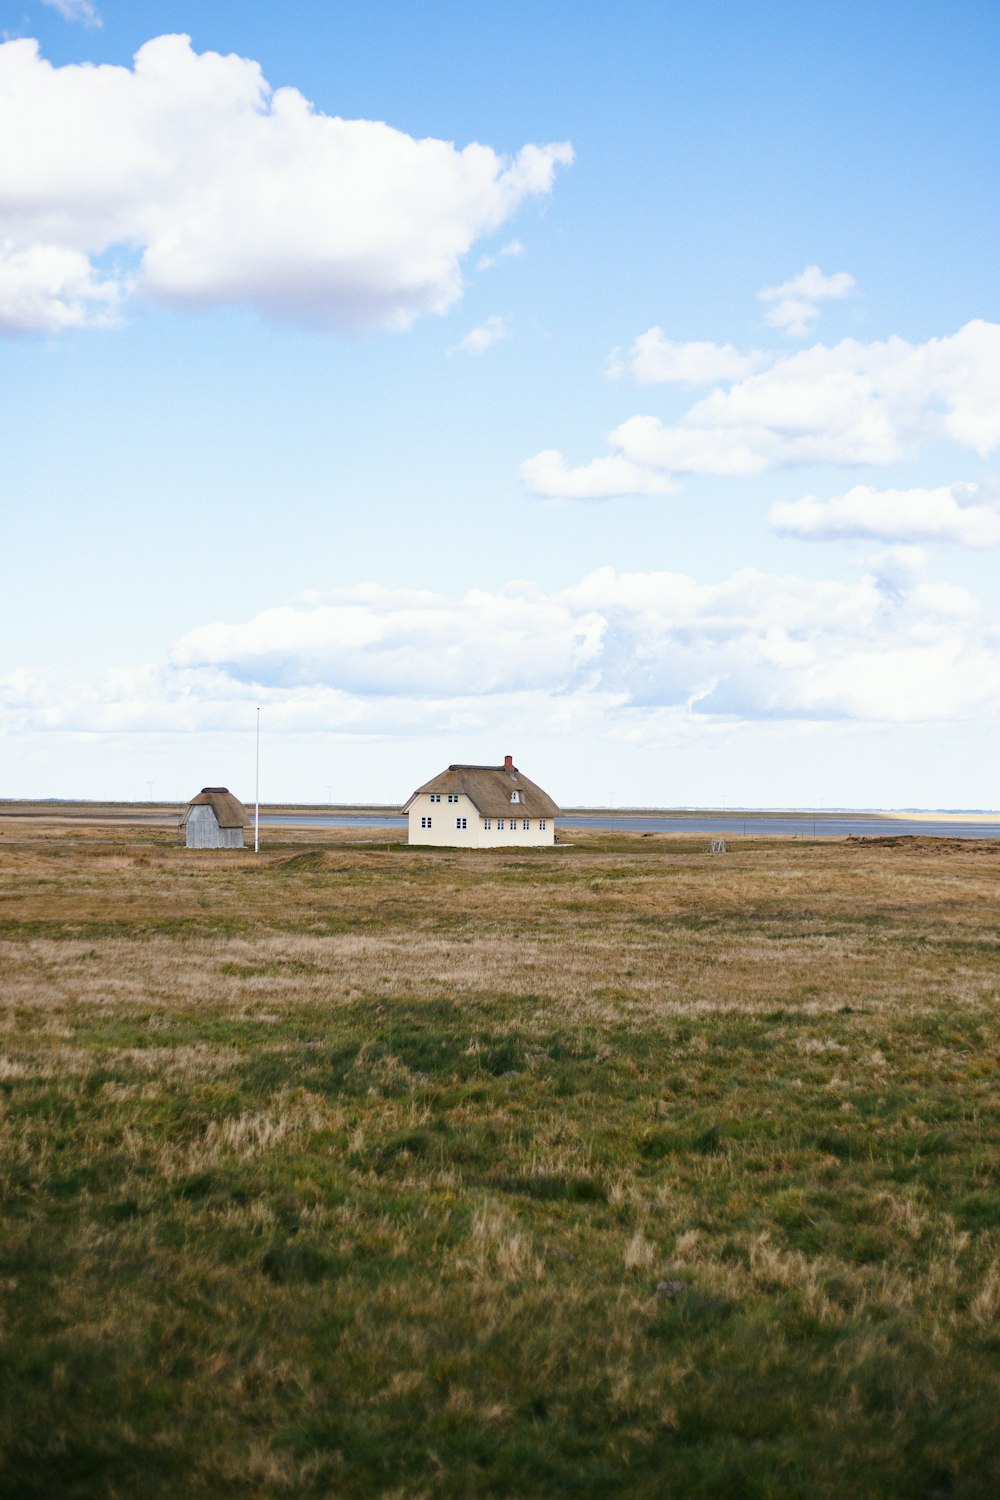 Casa blanca y marrón en campo de hierba verde bajo nubes blancas durante el día